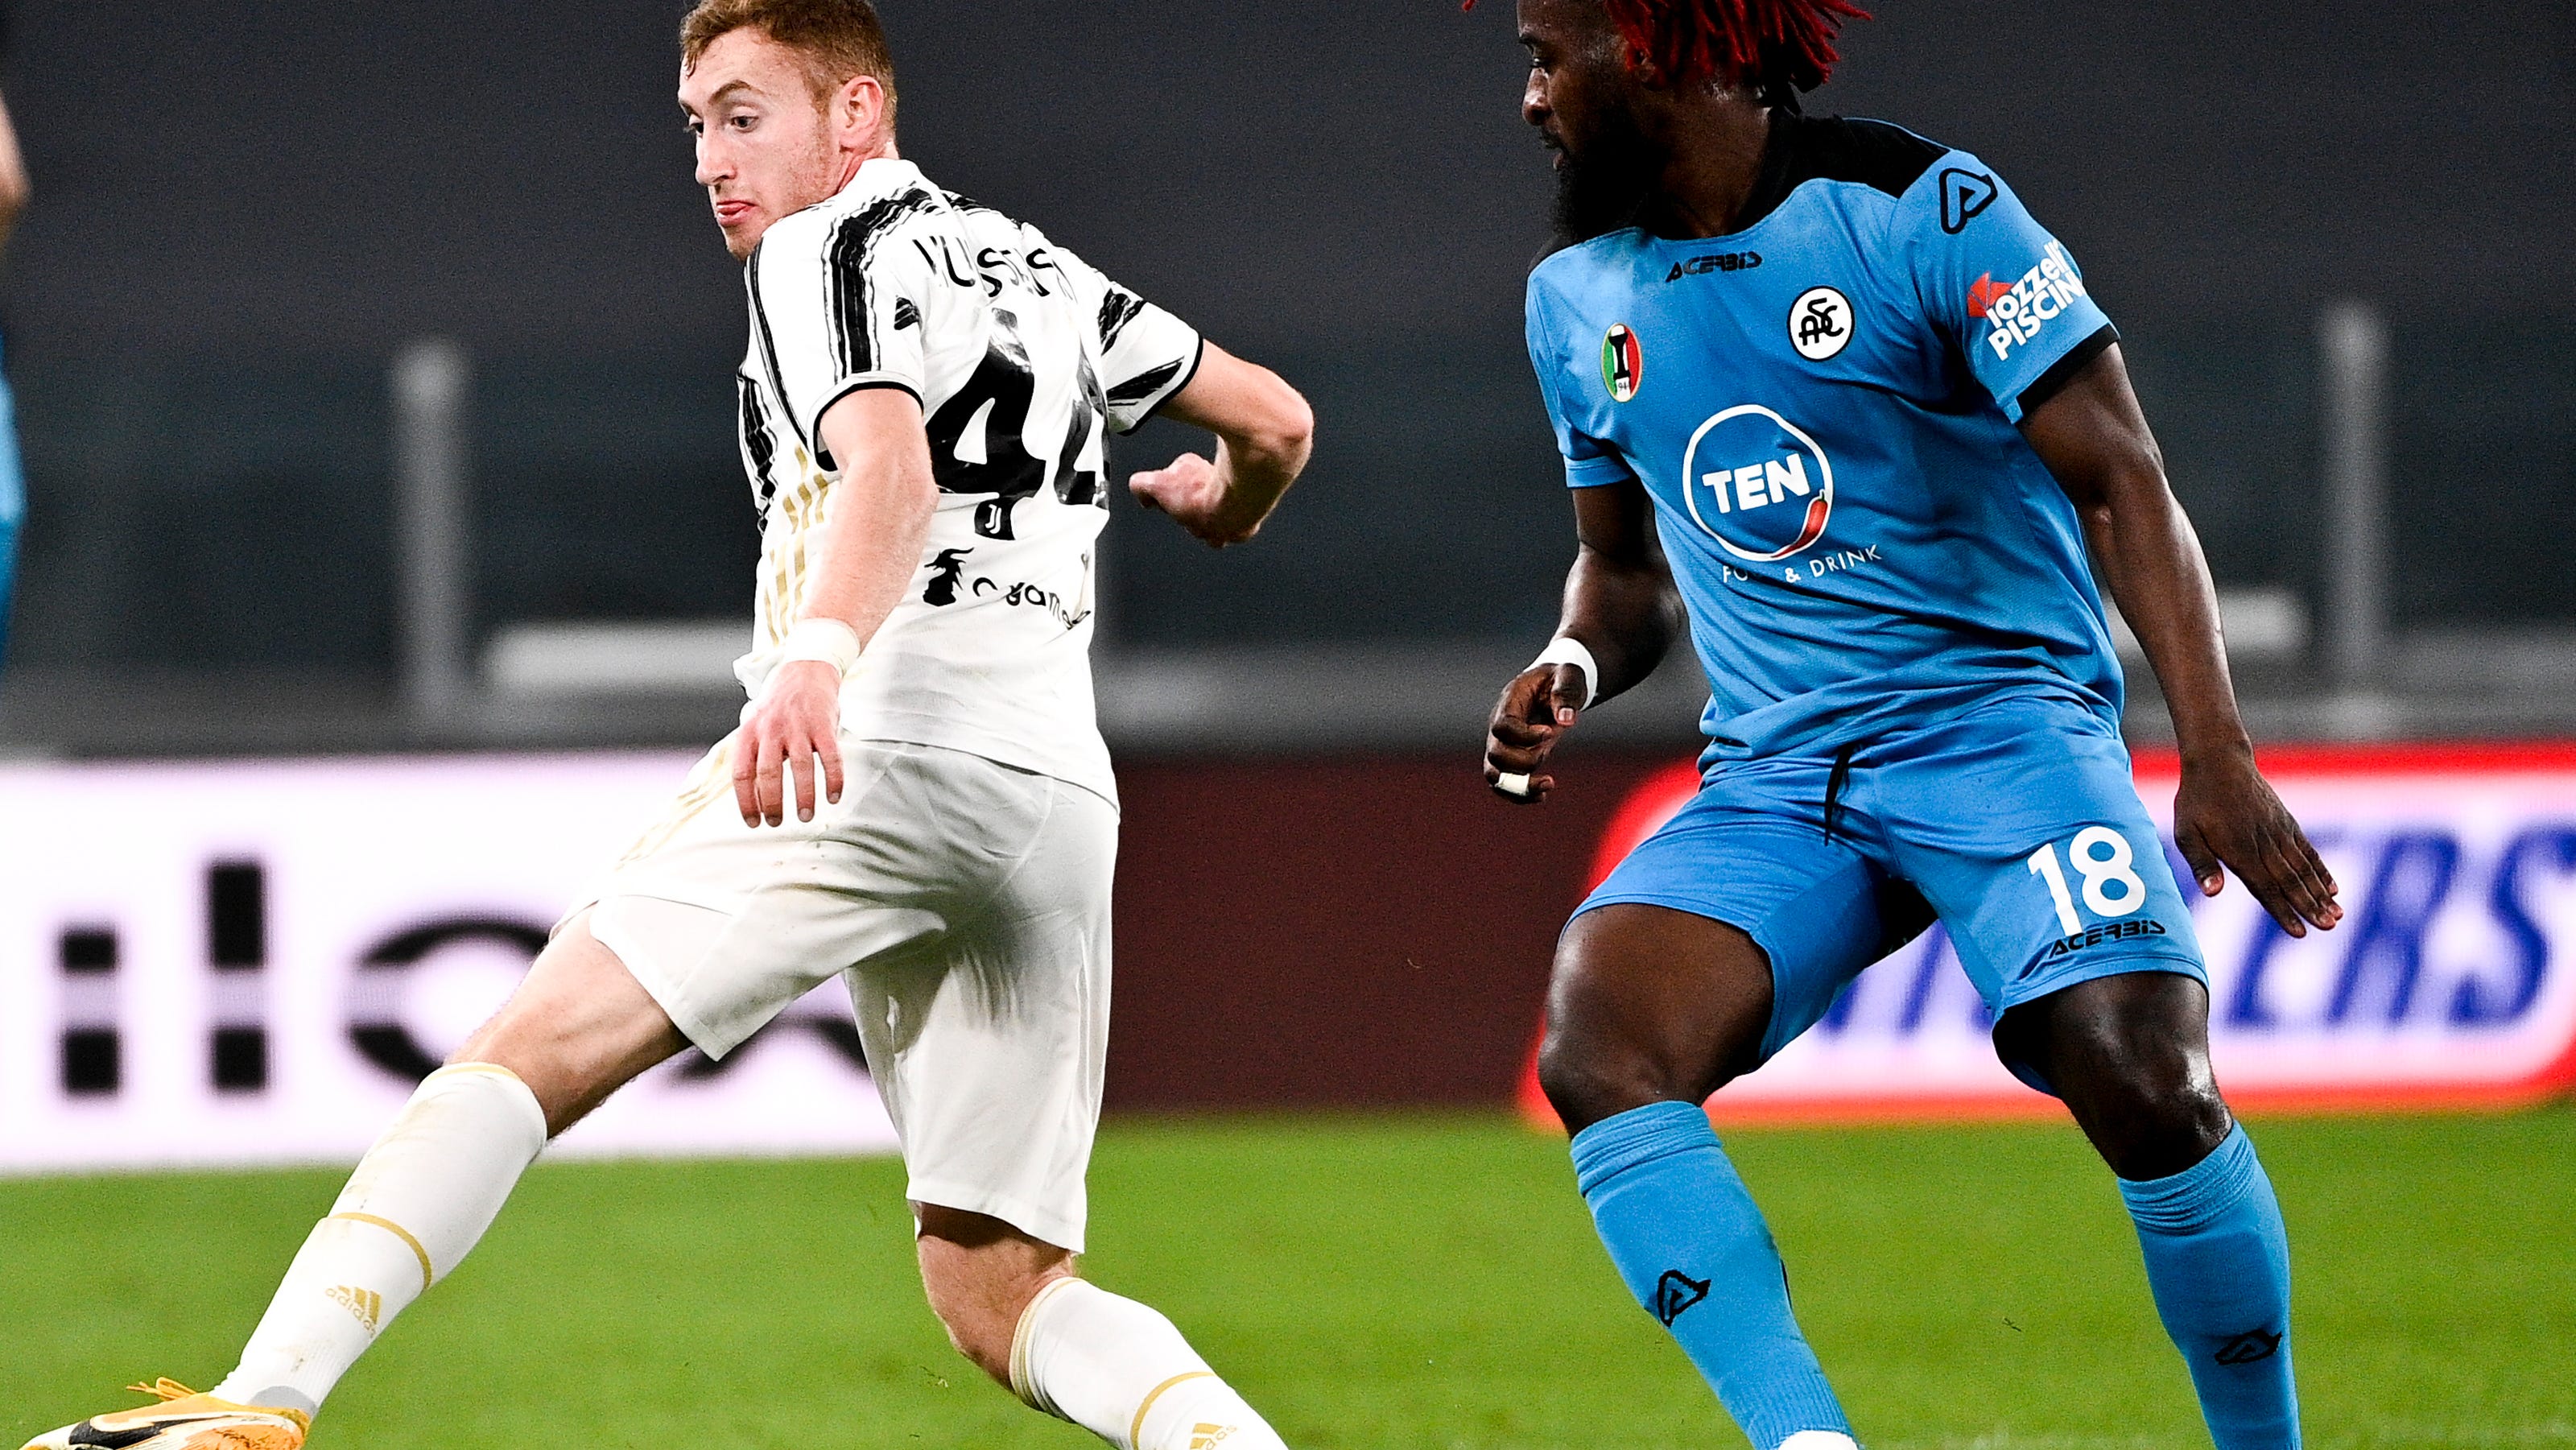 Morata returns to set Juventus on way to 3-0 win over Spezia